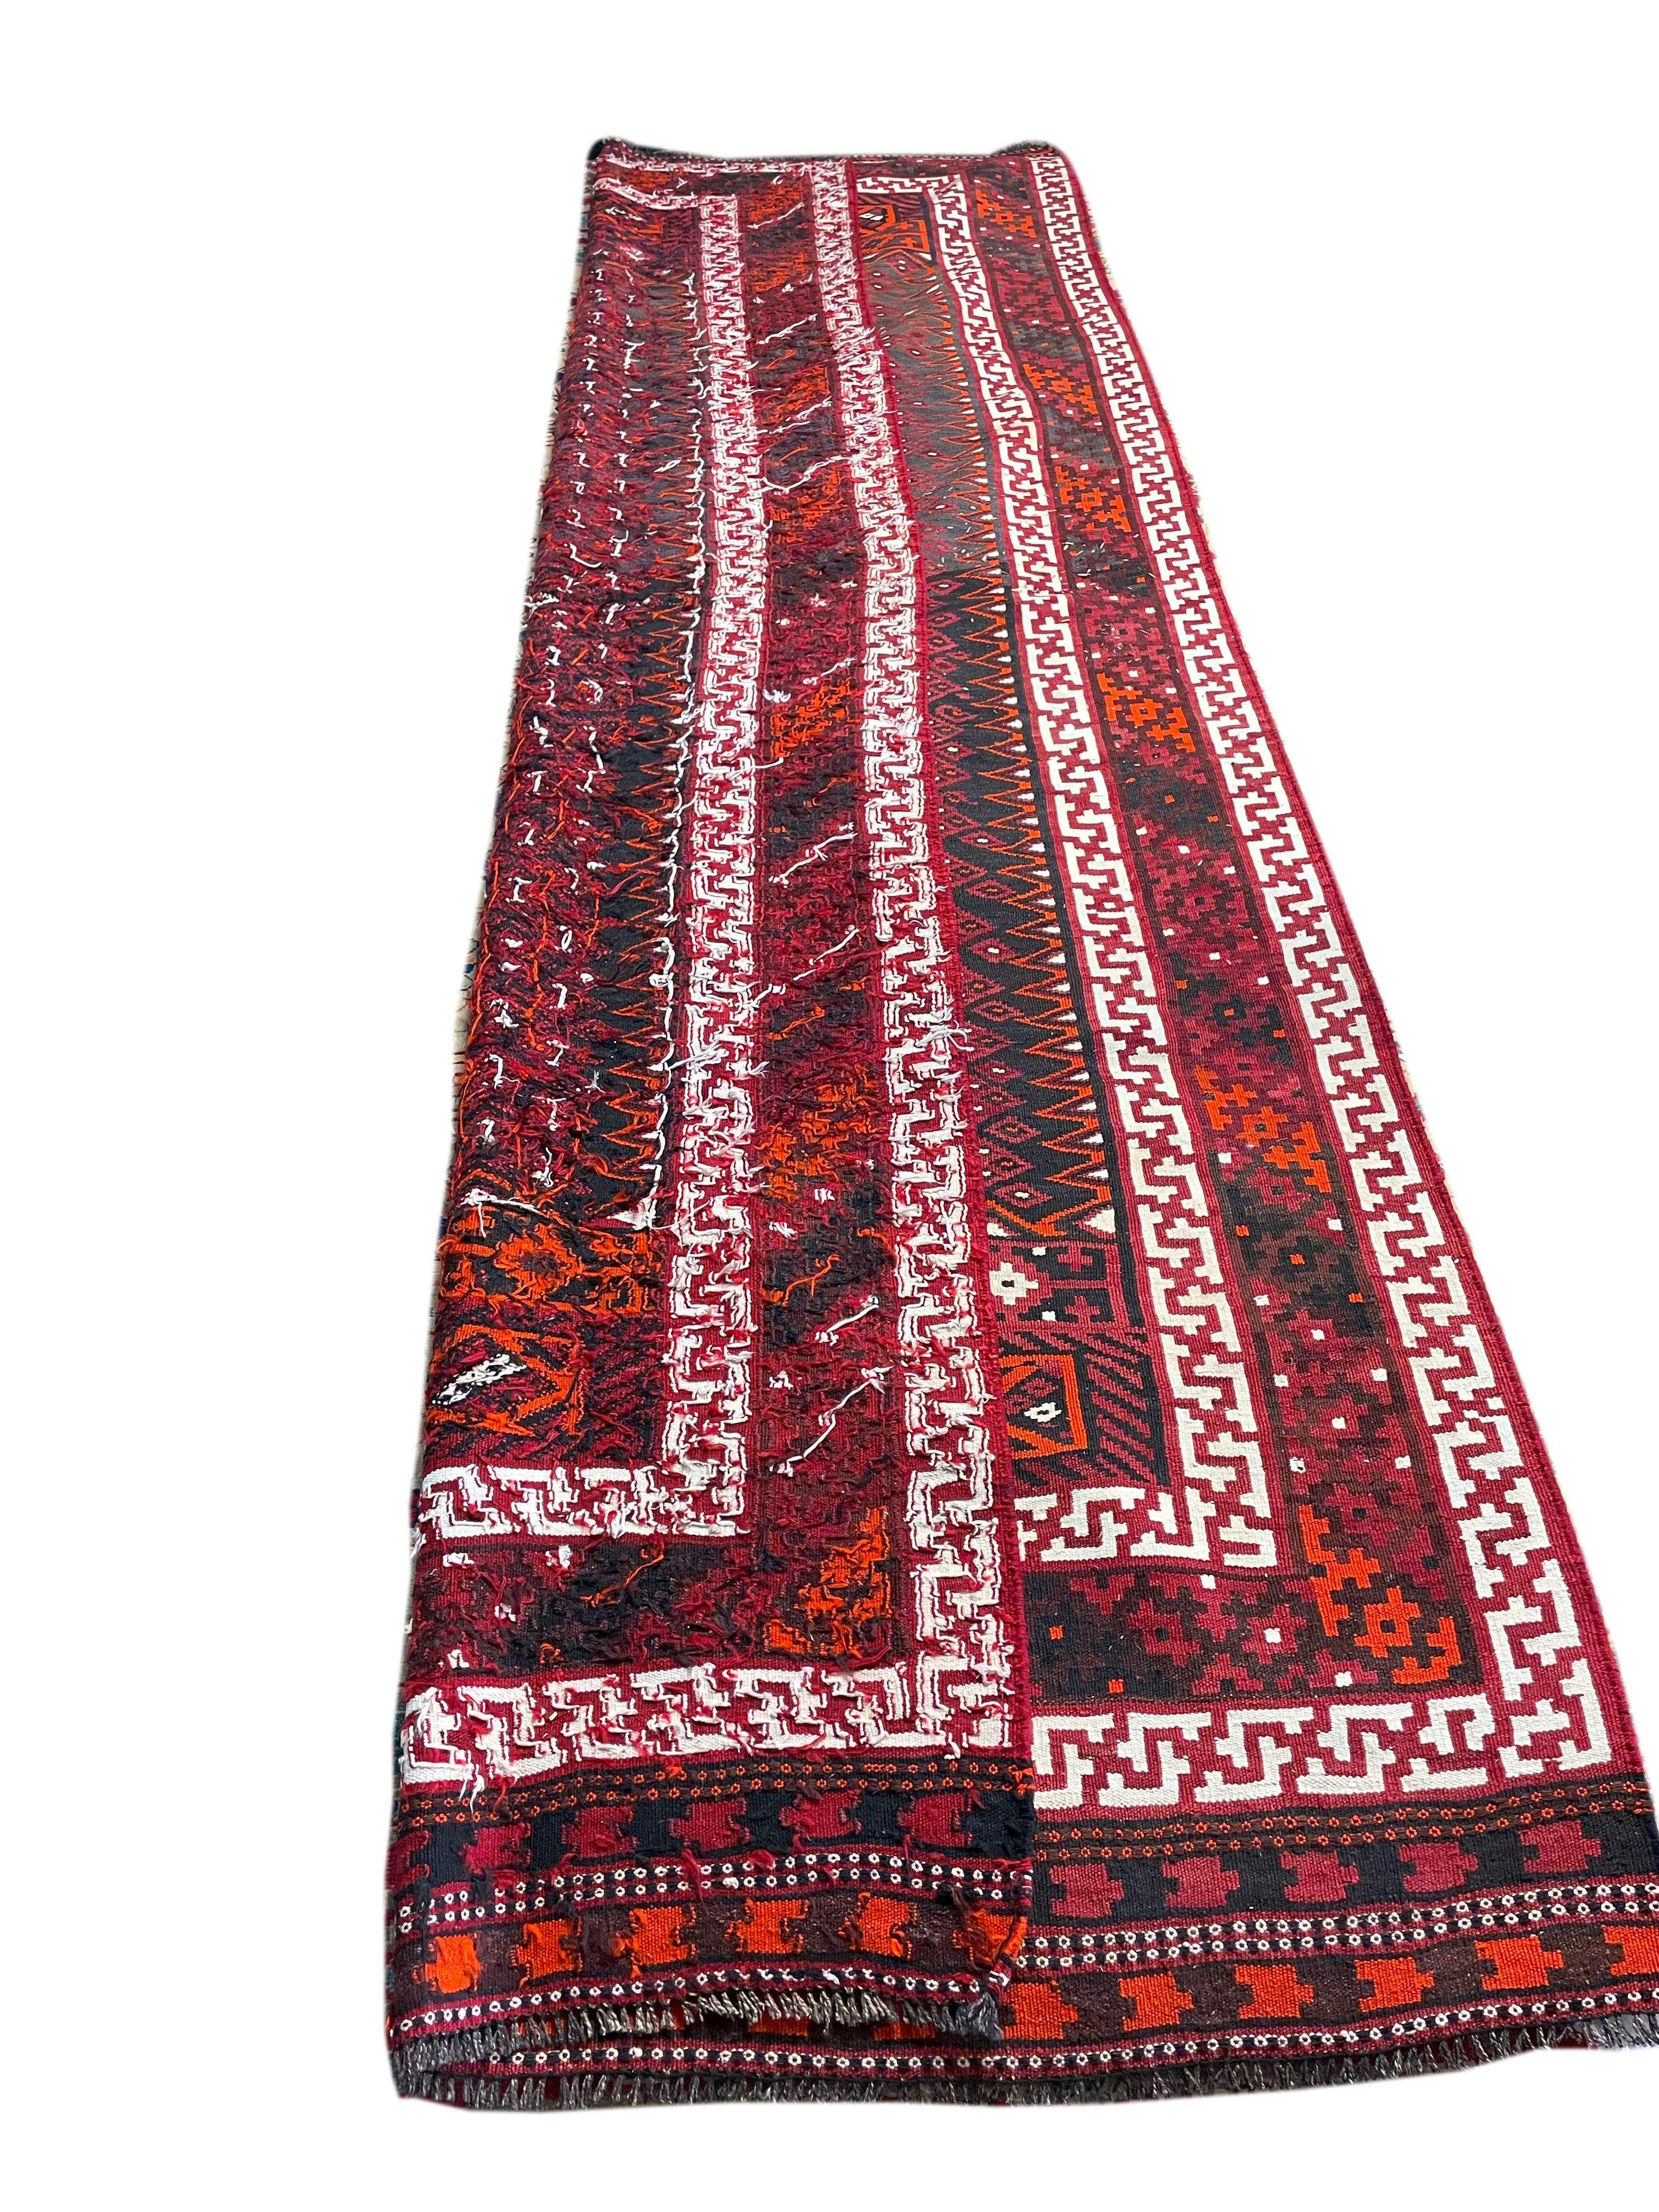 Magnifique Kilim persan Bolouchi des années 60. Le tissage serré et le travail d'aiguille complexe de cette pièce rendent ce tapis non seulement attrayant, mais aussi incroyablement durable. La couleur lie-de-vin caractéristique du peuple balouchi